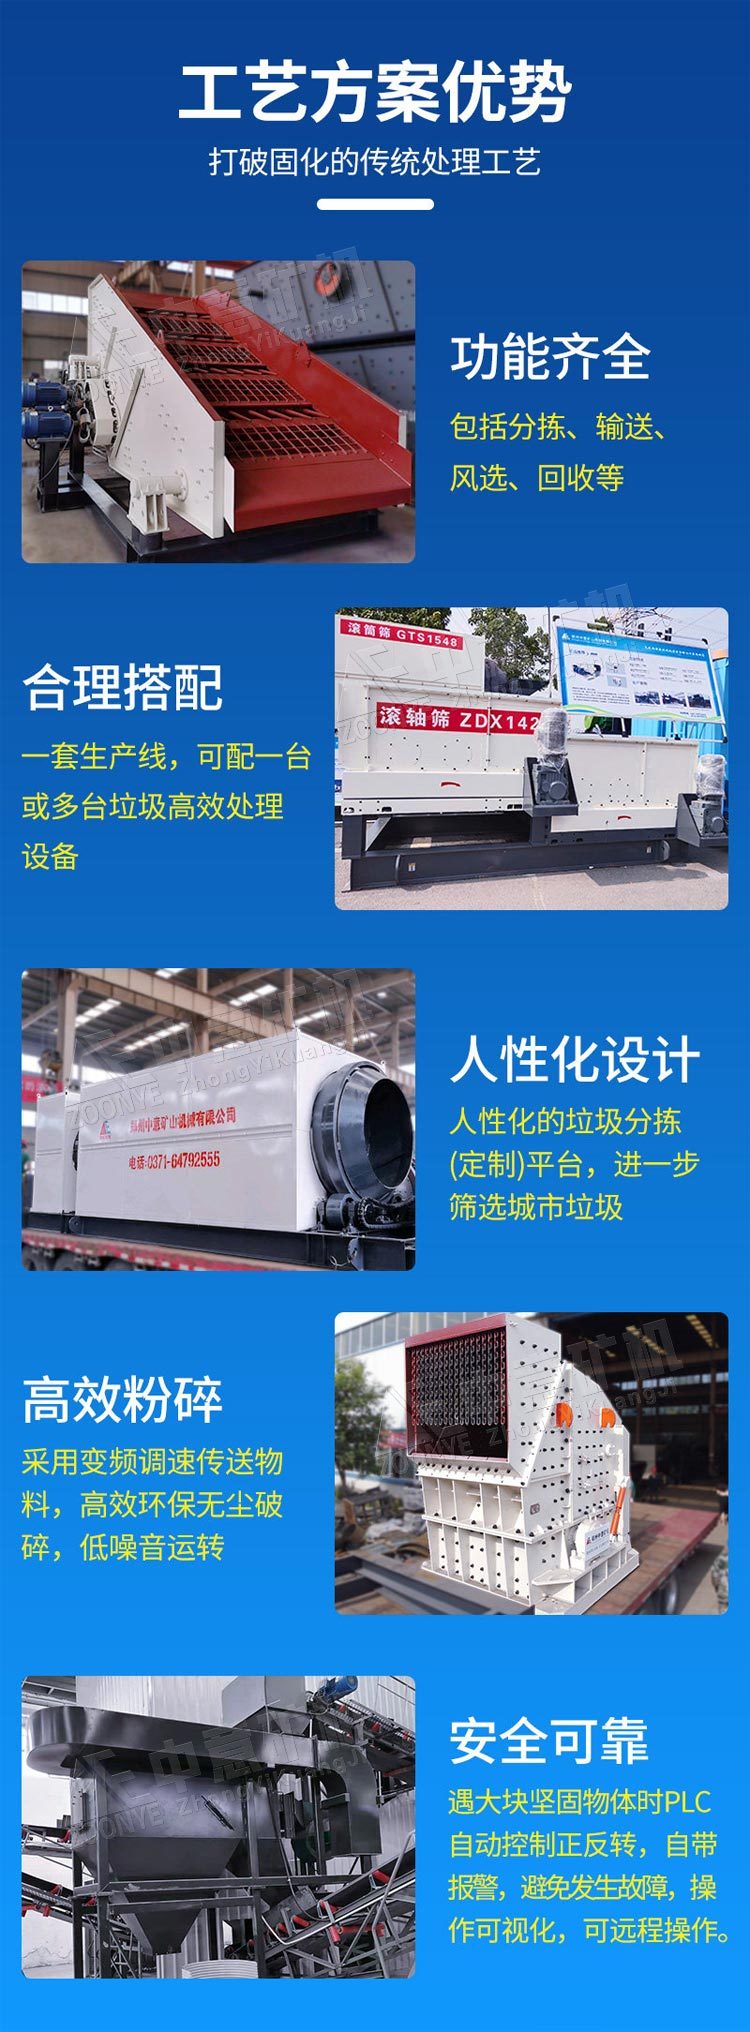 北京时产300方装修垃圾分类处理机器处理工艺与优势liu88